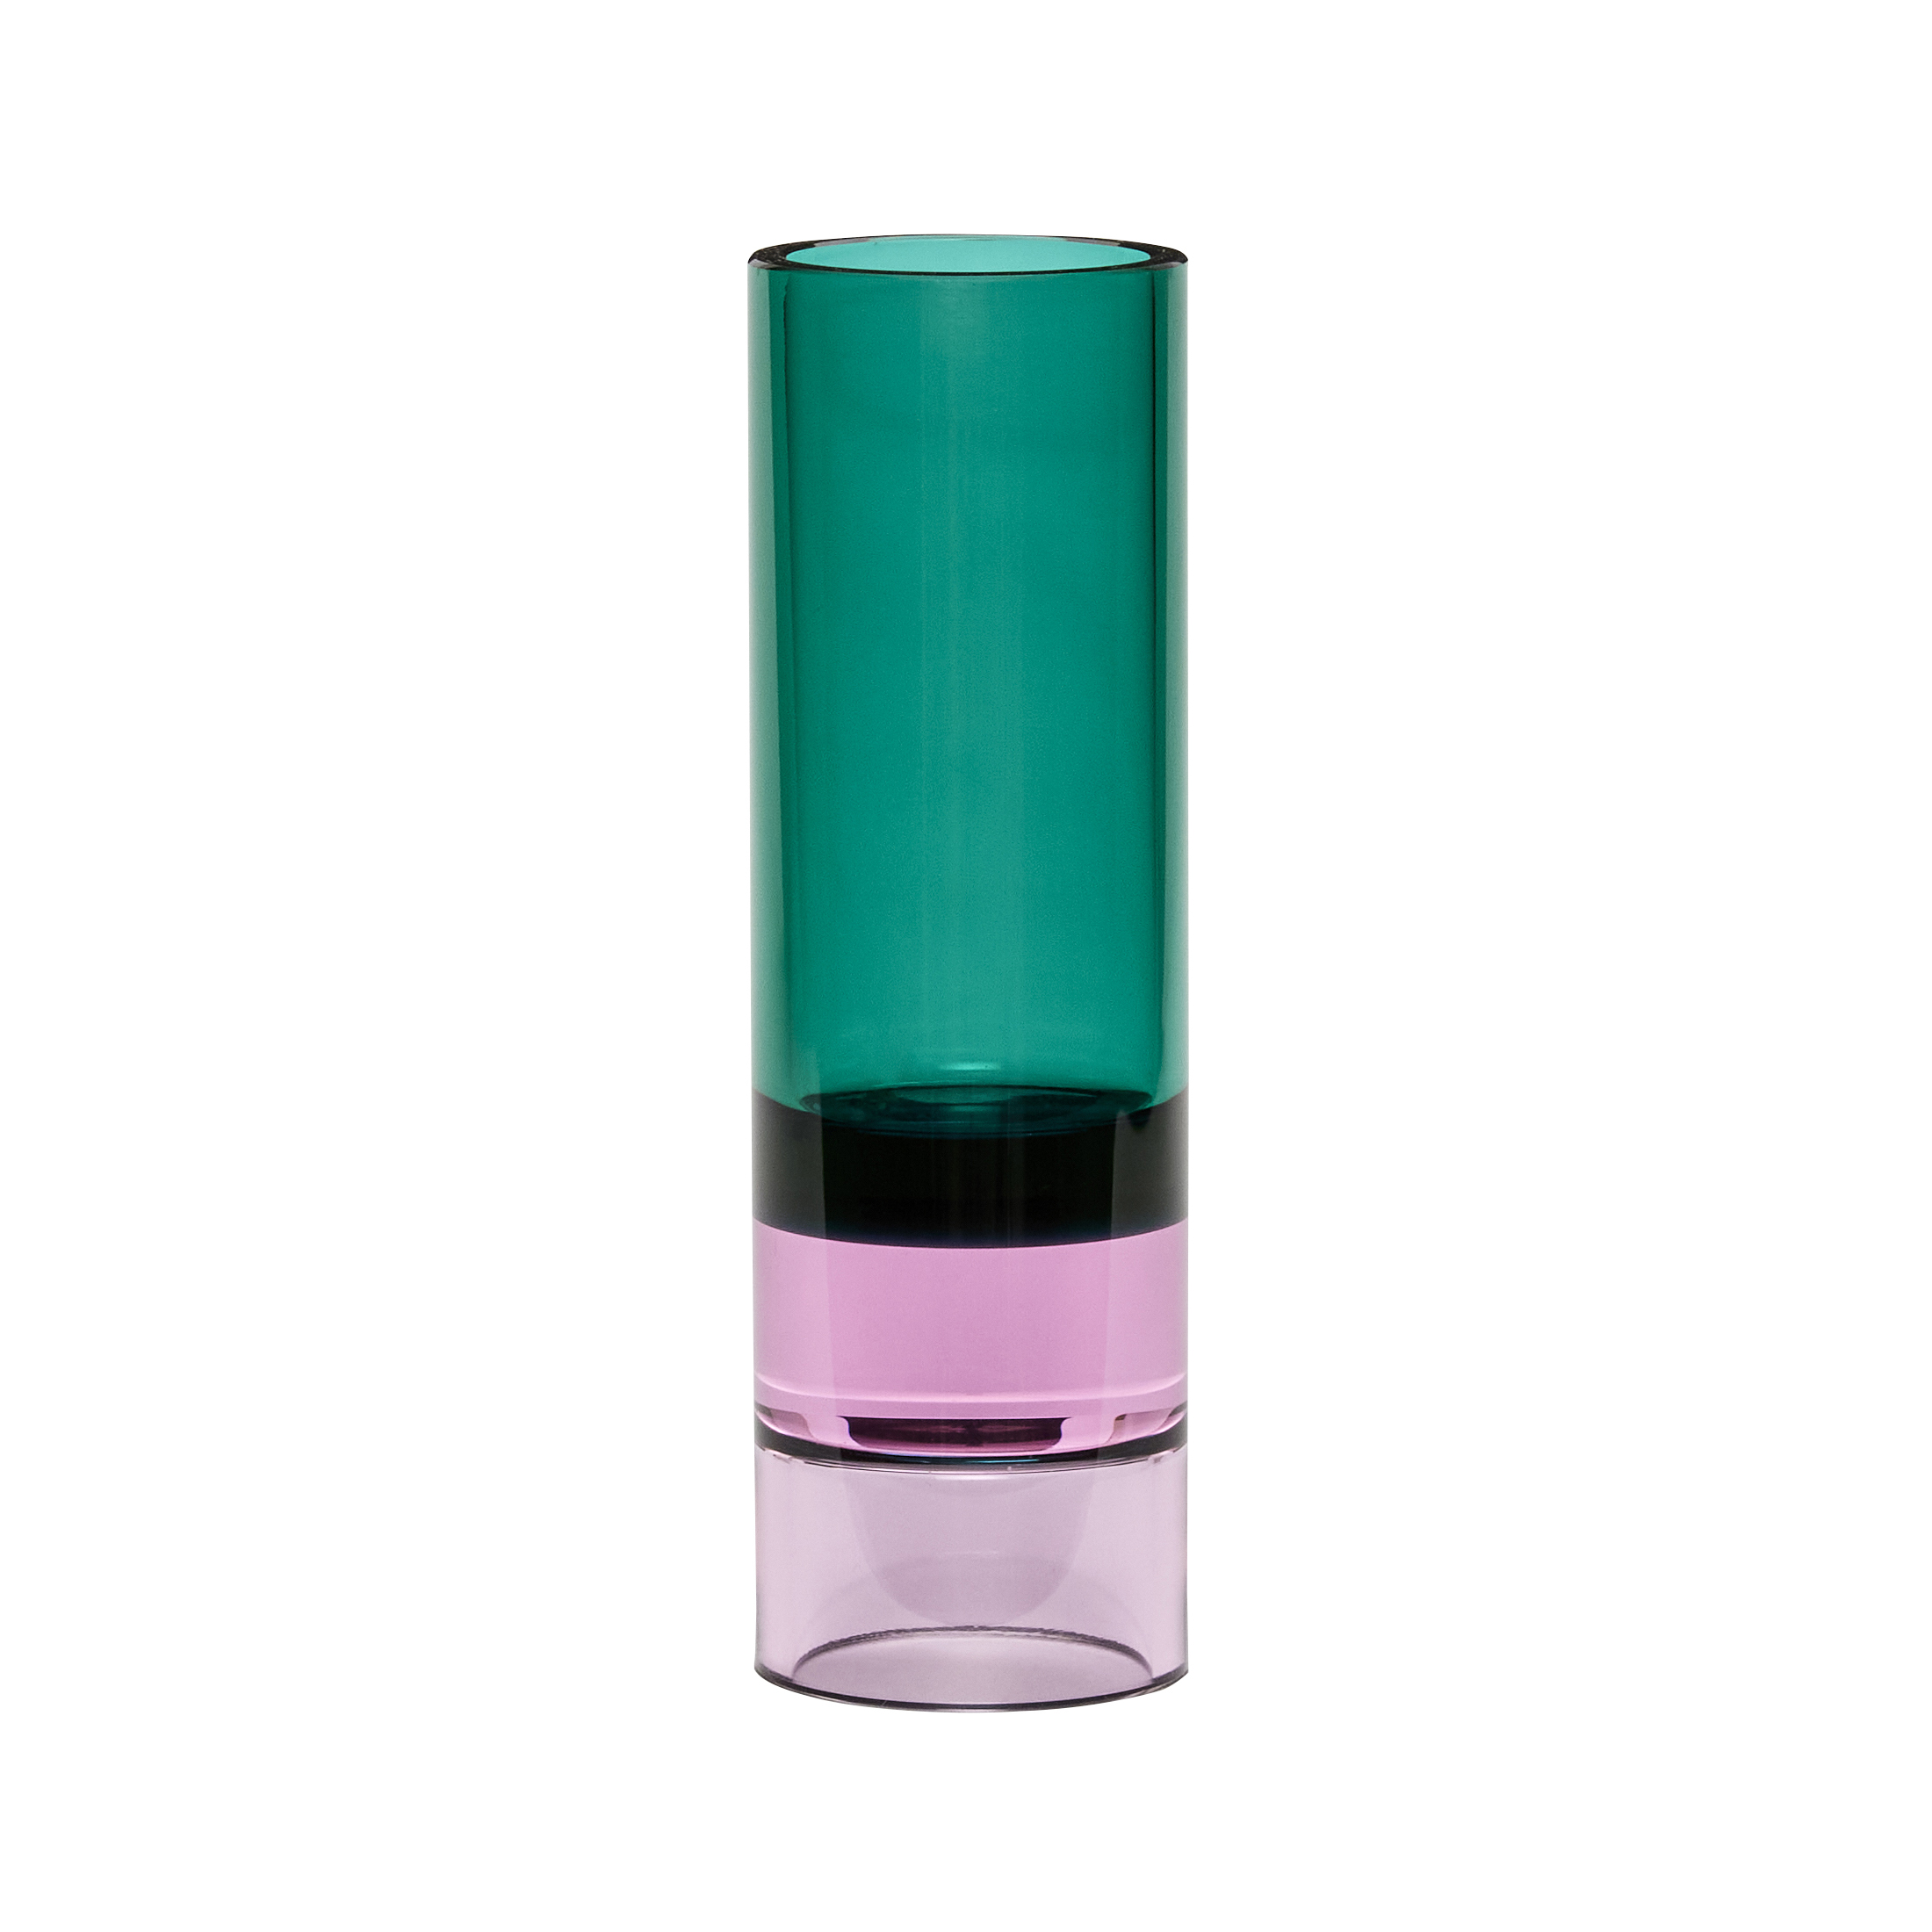 hubsch-astro-crystal-vase-green-pink